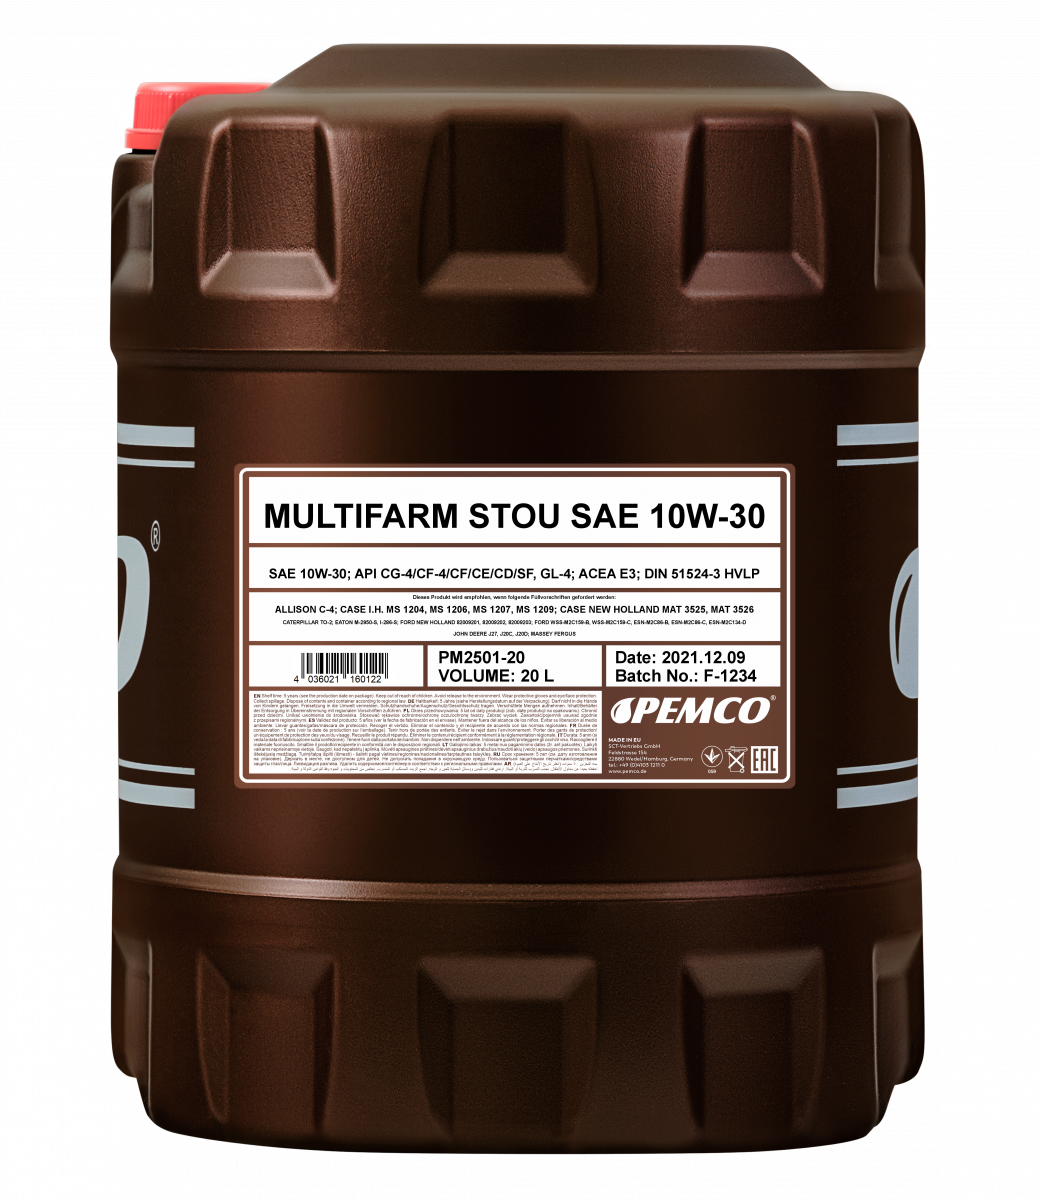 Моторное масло PEMCO Multifarm STOU 10W-30 CG-4/CF-4/CF/CE/CD/SF/GL-4 полусинтетическое, 20л (PM2501-20)